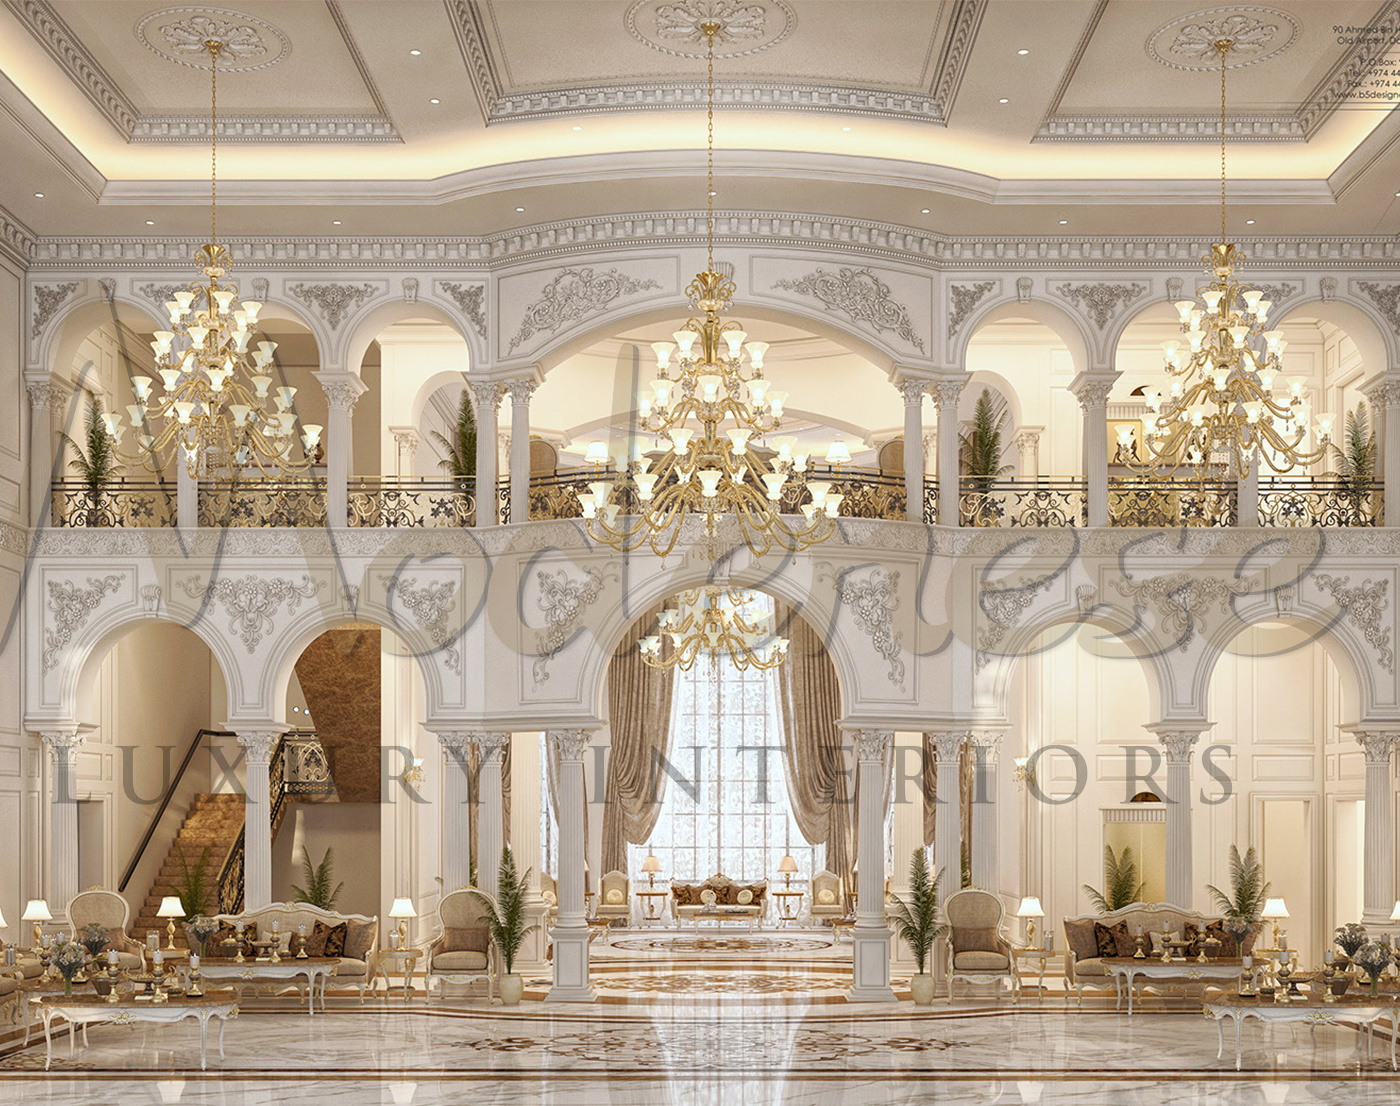 تصميم ديكور داخلي لبيوت كلاسيكية في مكة المكرمة، المملكة العربية السعودية